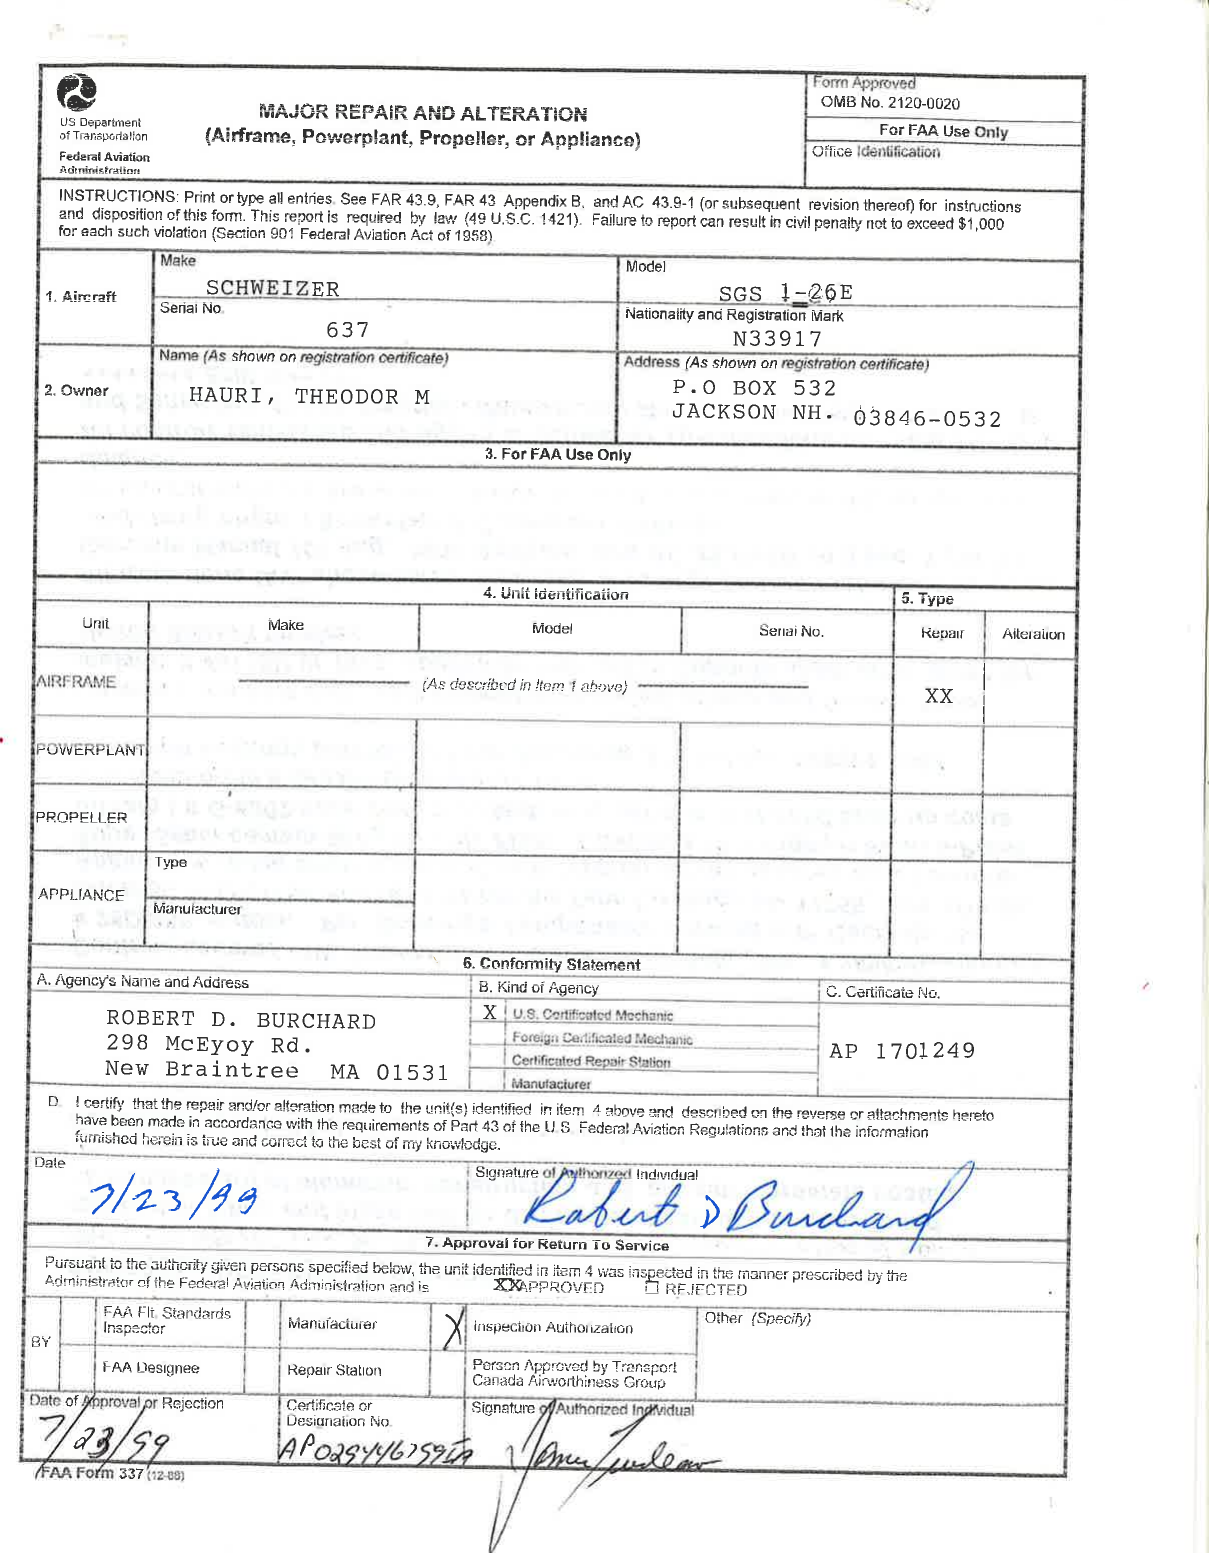 Page 1 of 4 - SGS 1-26 N33917 Form 337 Major Repair